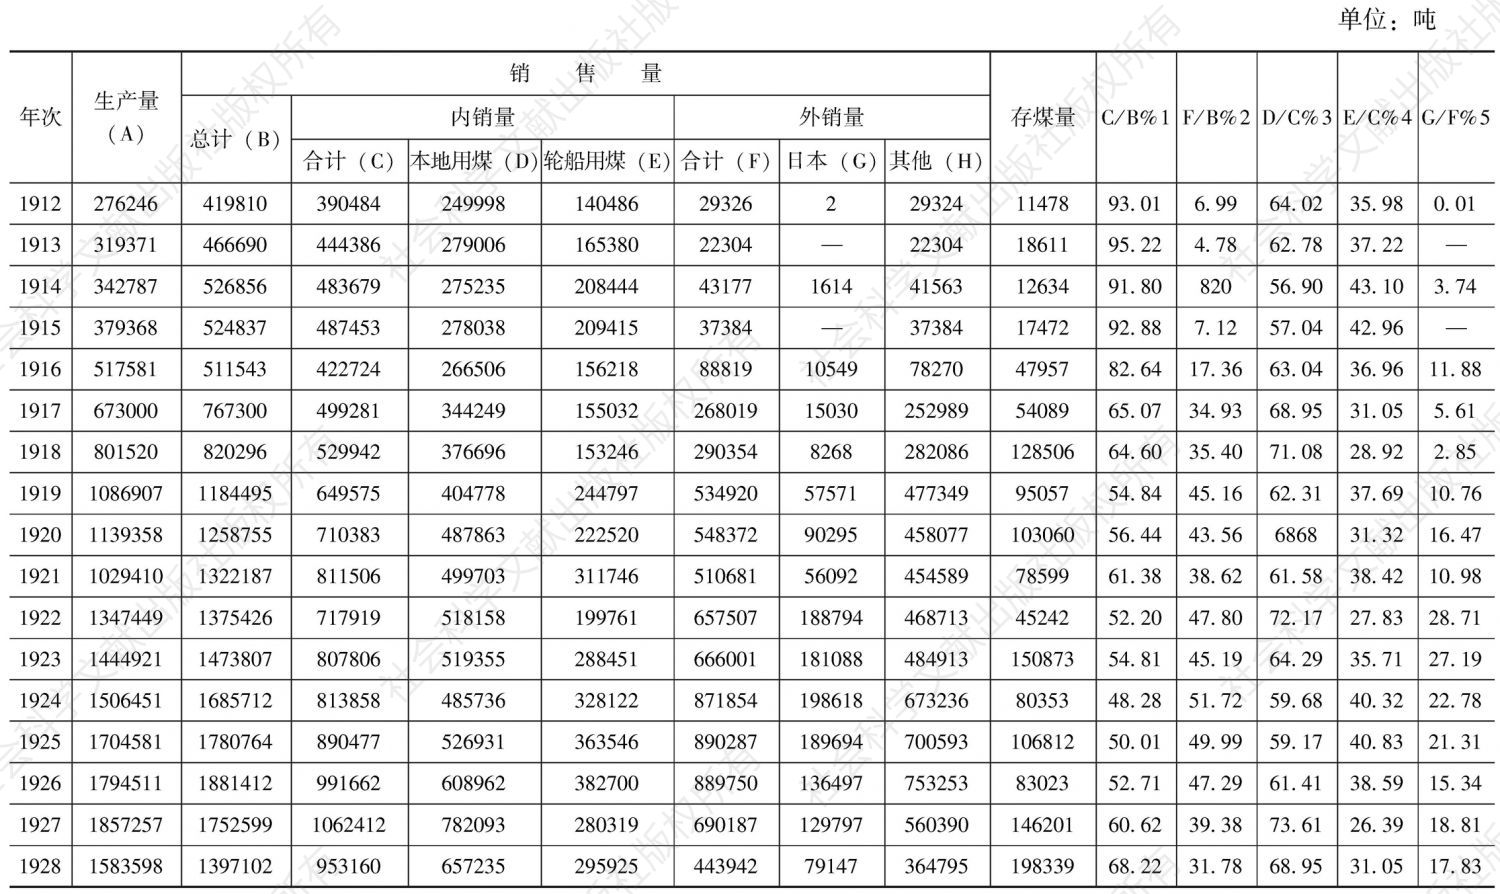 附表2 日本帝国主义统治时期台湾煤产销量表（1912～1945）